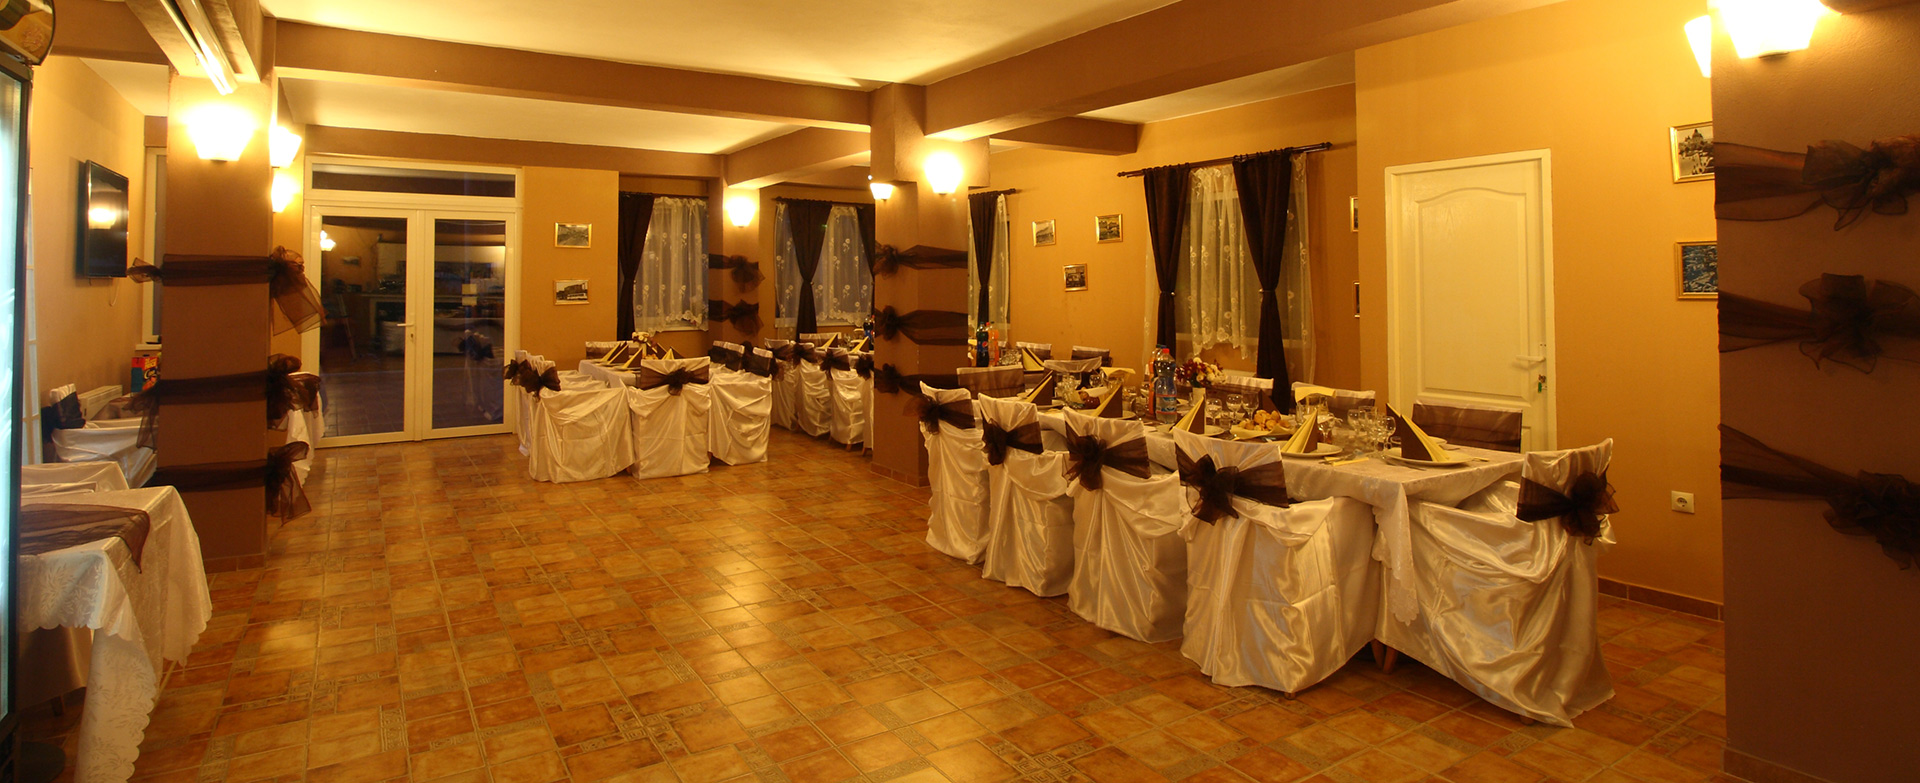 Restaurant Evenimente Herculane